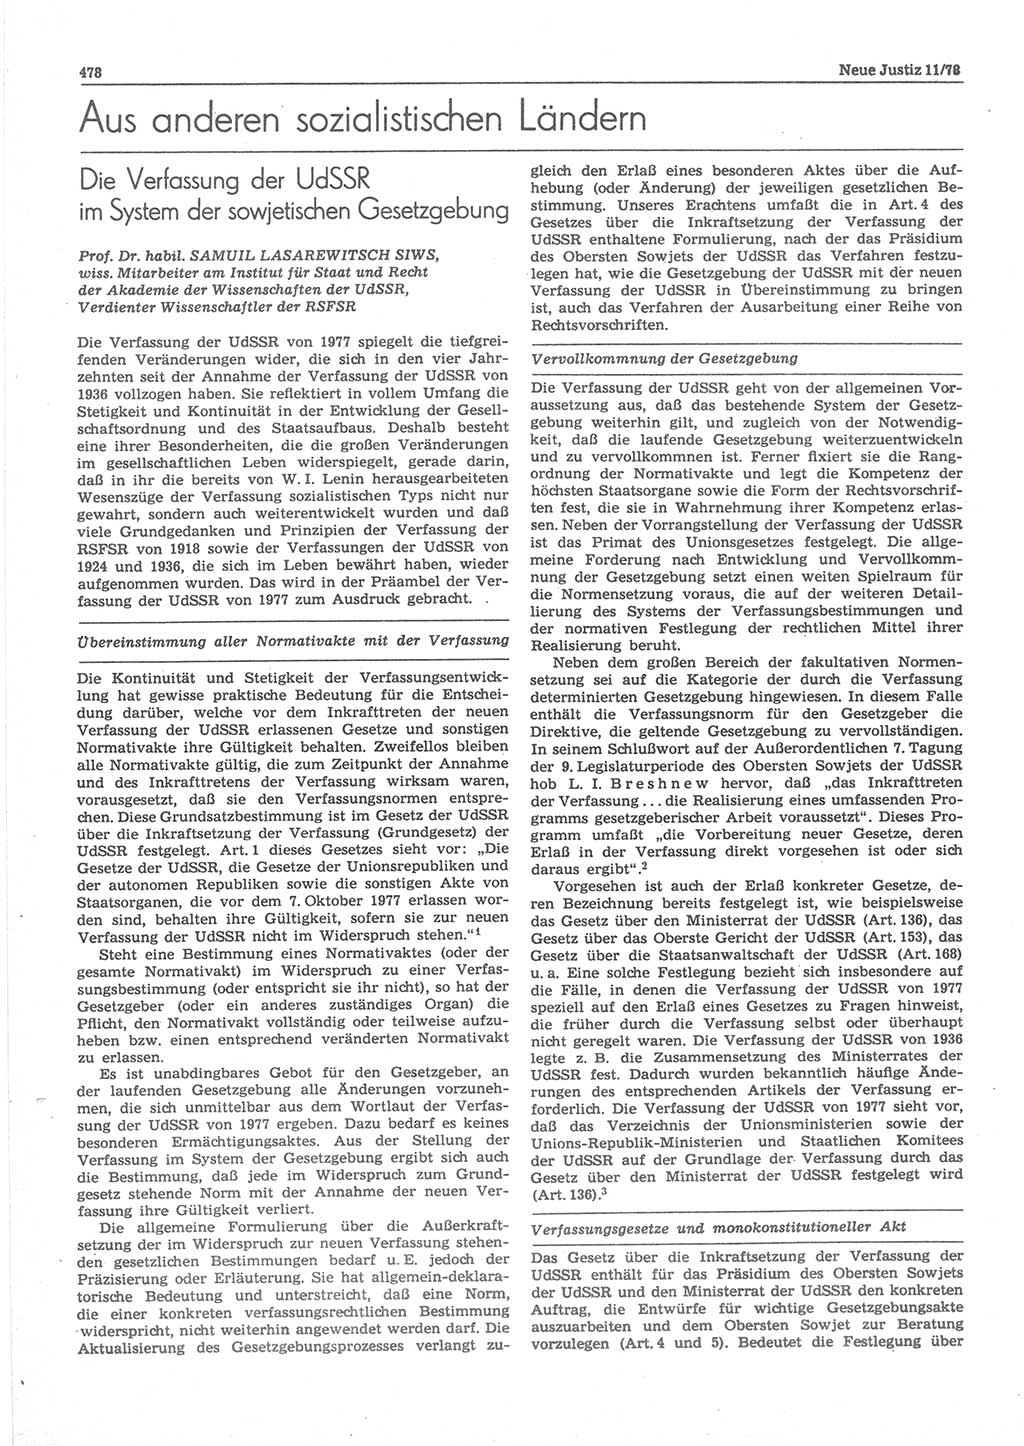 Neue Justiz (NJ), Zeitschrift für sozialistisches Recht und Gesetzlichkeit [Deutsche Demokratische Republik (DDR)], 32. Jahrgang 1978, Seite 478 (NJ DDR 1978, S. 478)